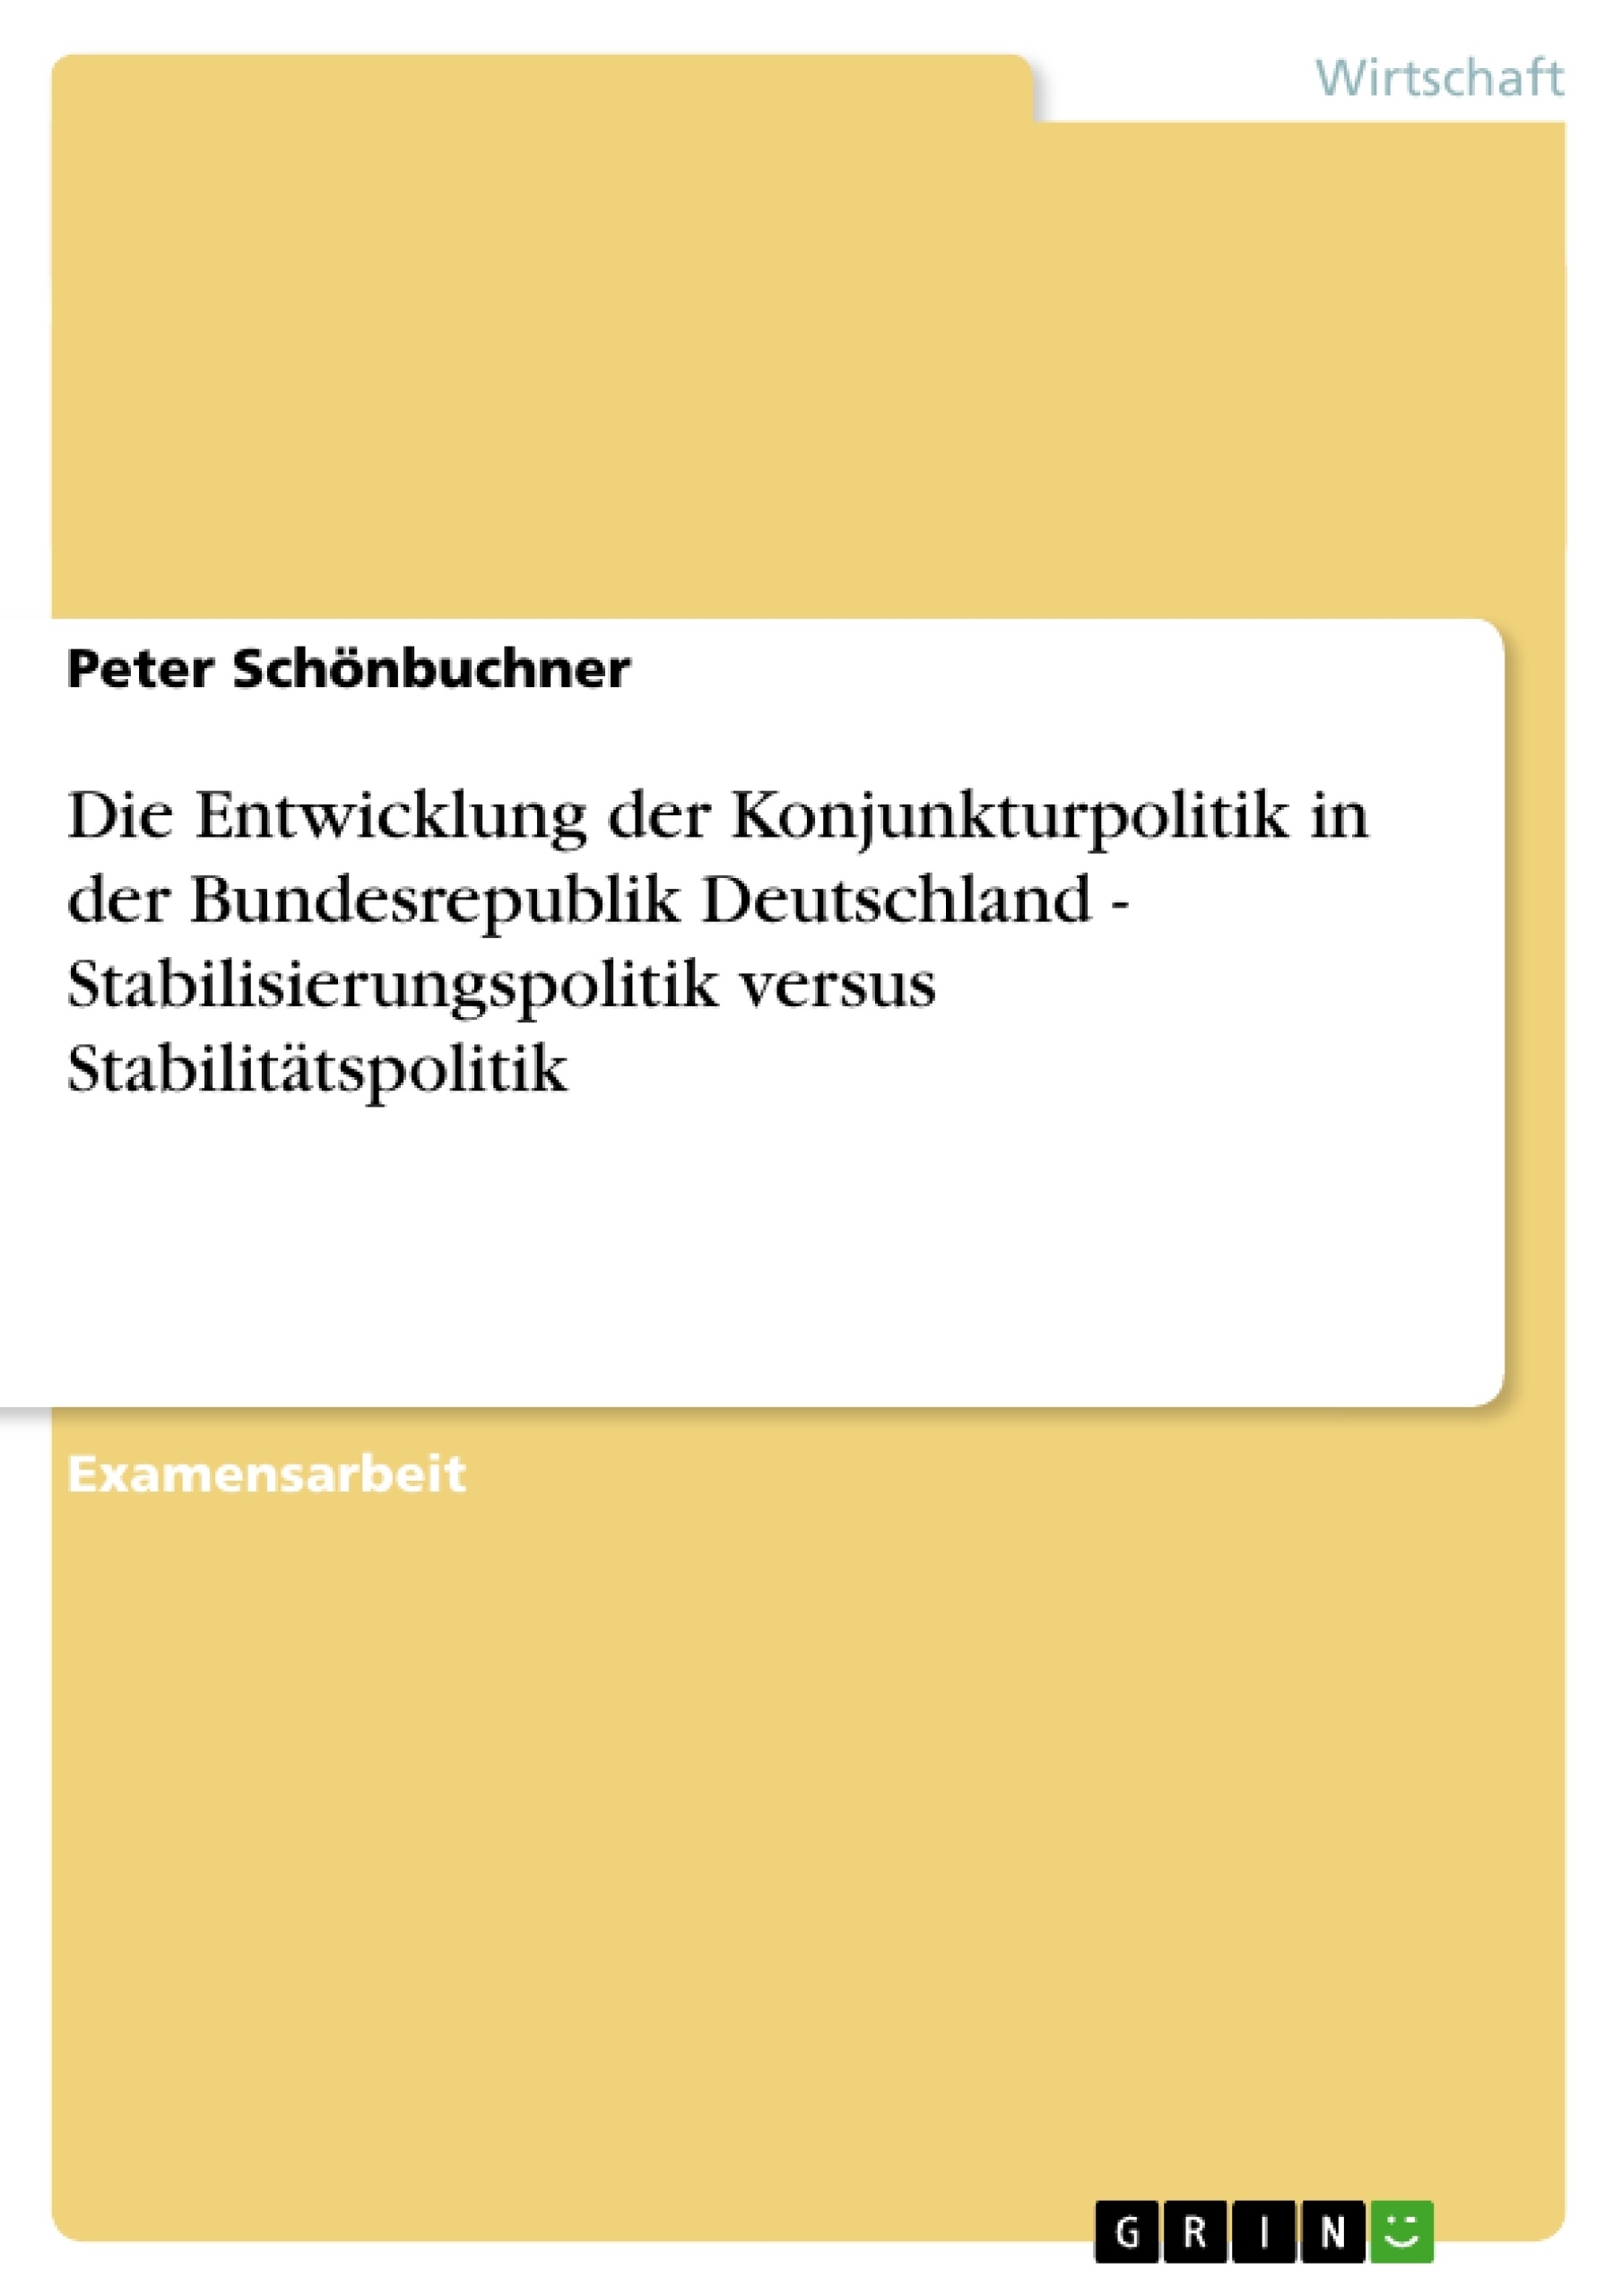 Title: Die Entwicklung der Konjunkturpolitik in der Bundesrepublik Deutschland - Stabilisierungspolitik versus Stabilitätspolitik